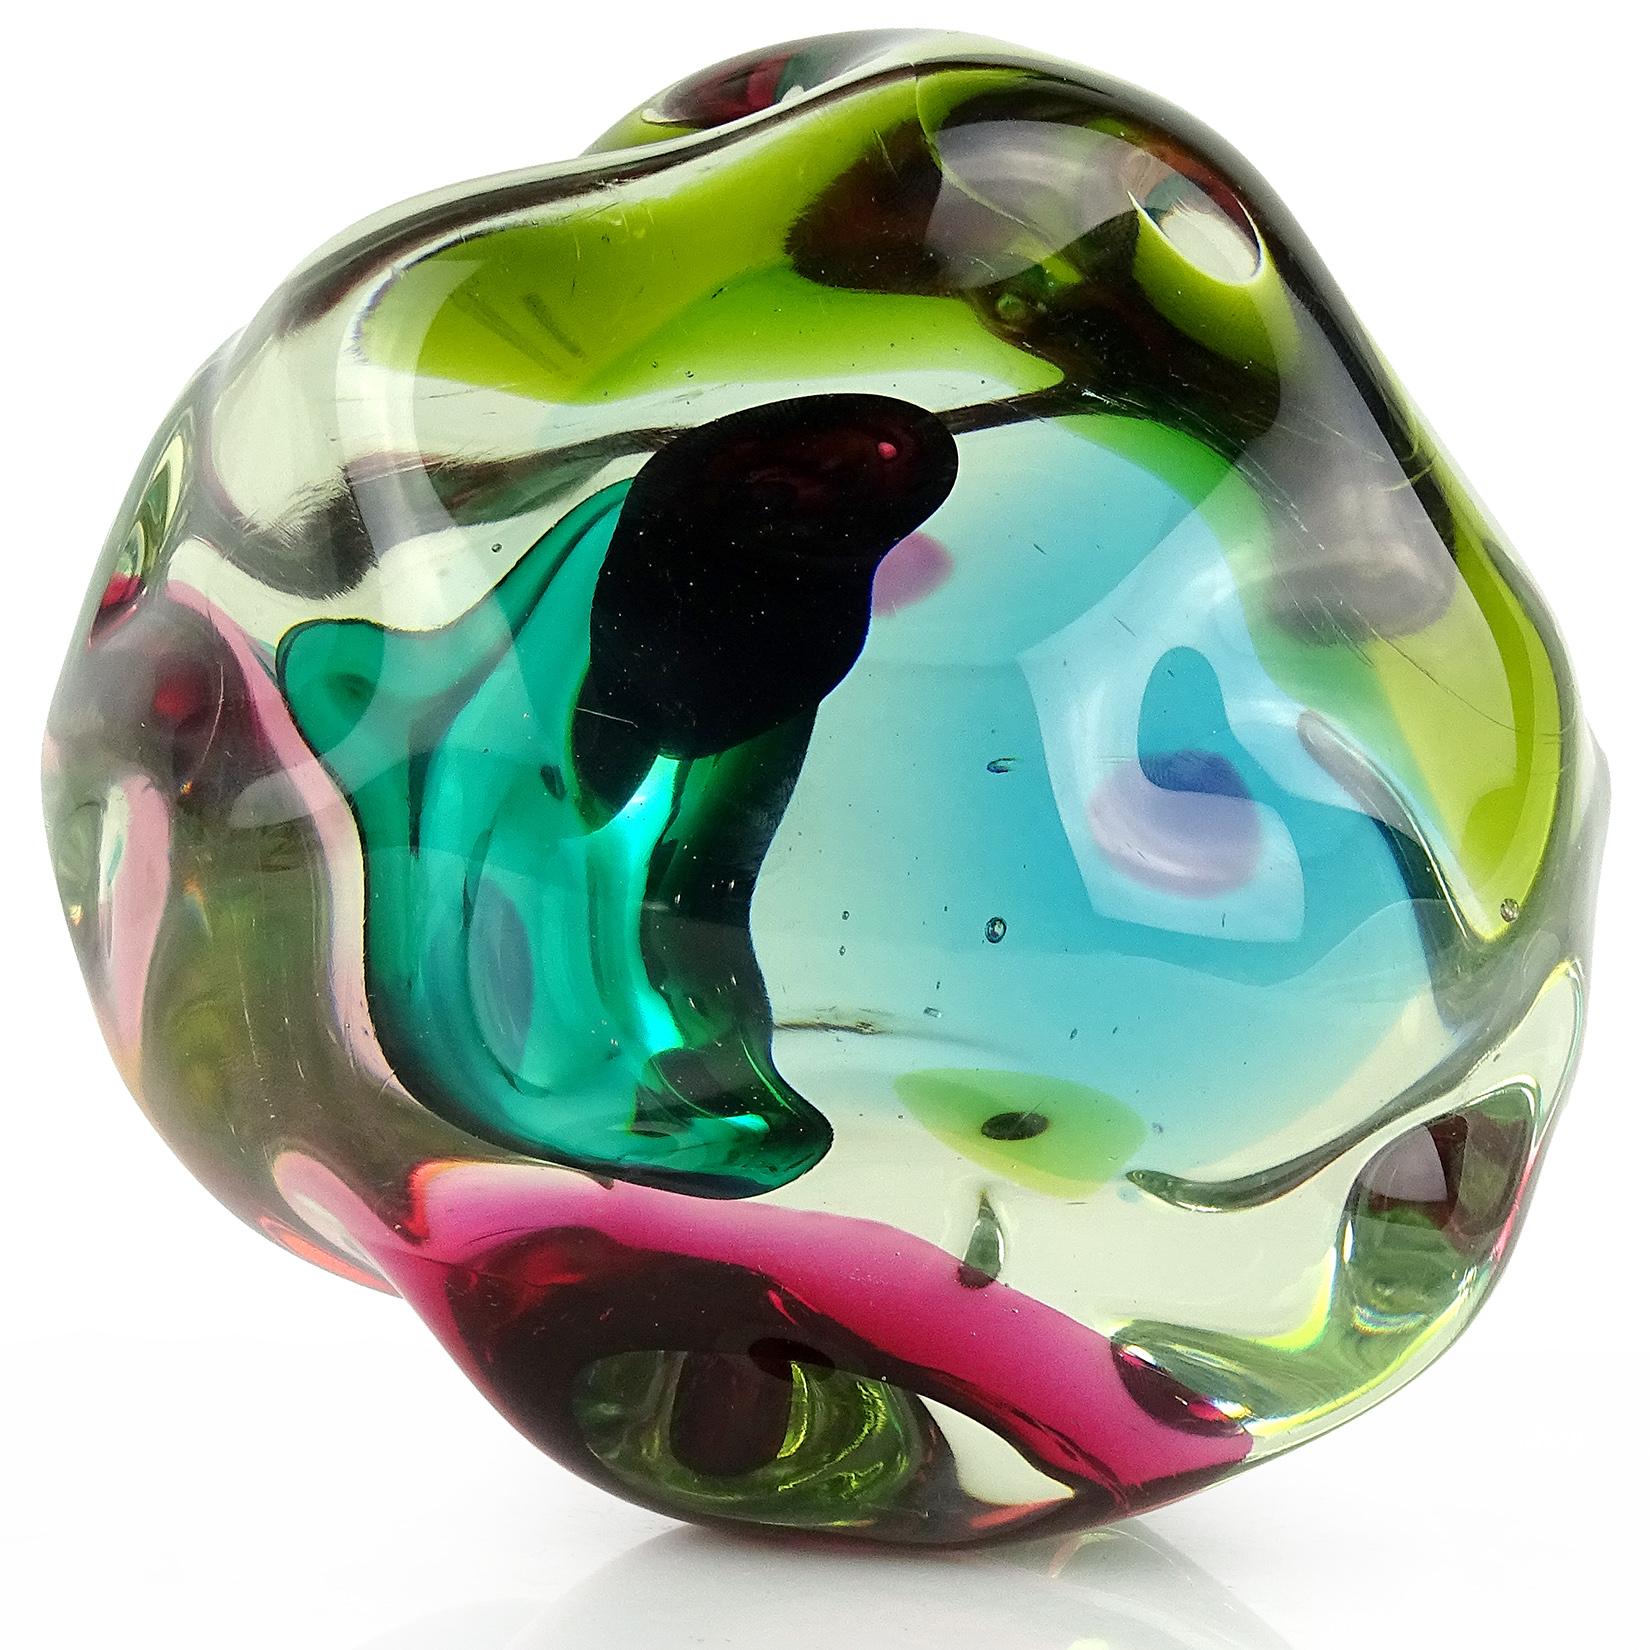 Hand-Crafted Salviati Gaspari Murano Multi-Color Biomorphic Rock Italian Art Glass Sculpture